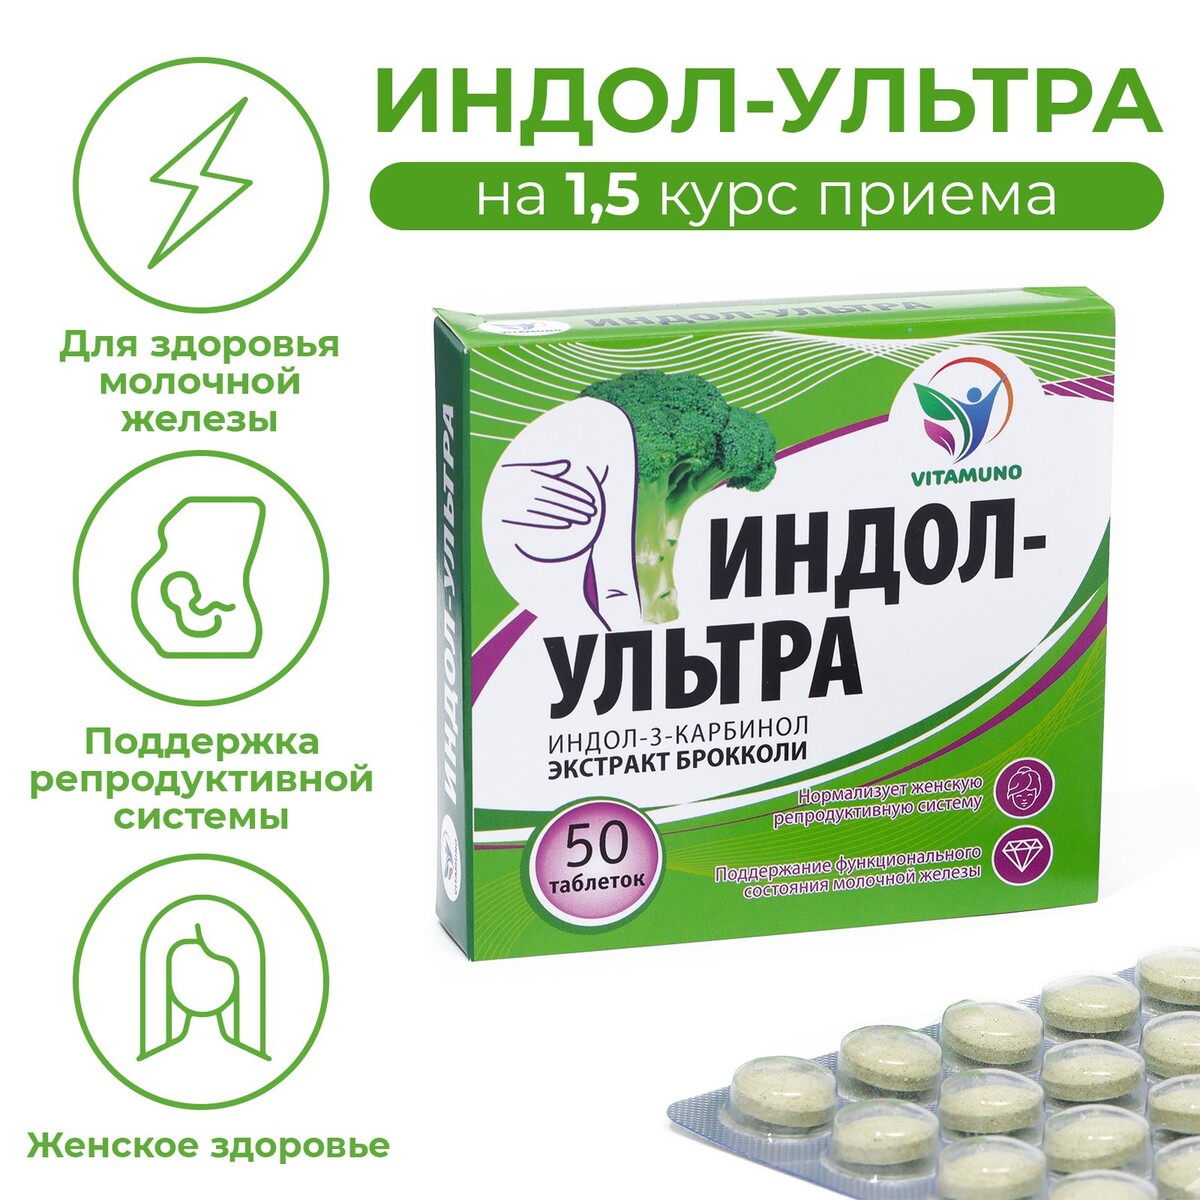 Индол-ультра, 50 таблеток по 500 мг, женское здоровье pro здоровье перевод с медицинского на человеческий